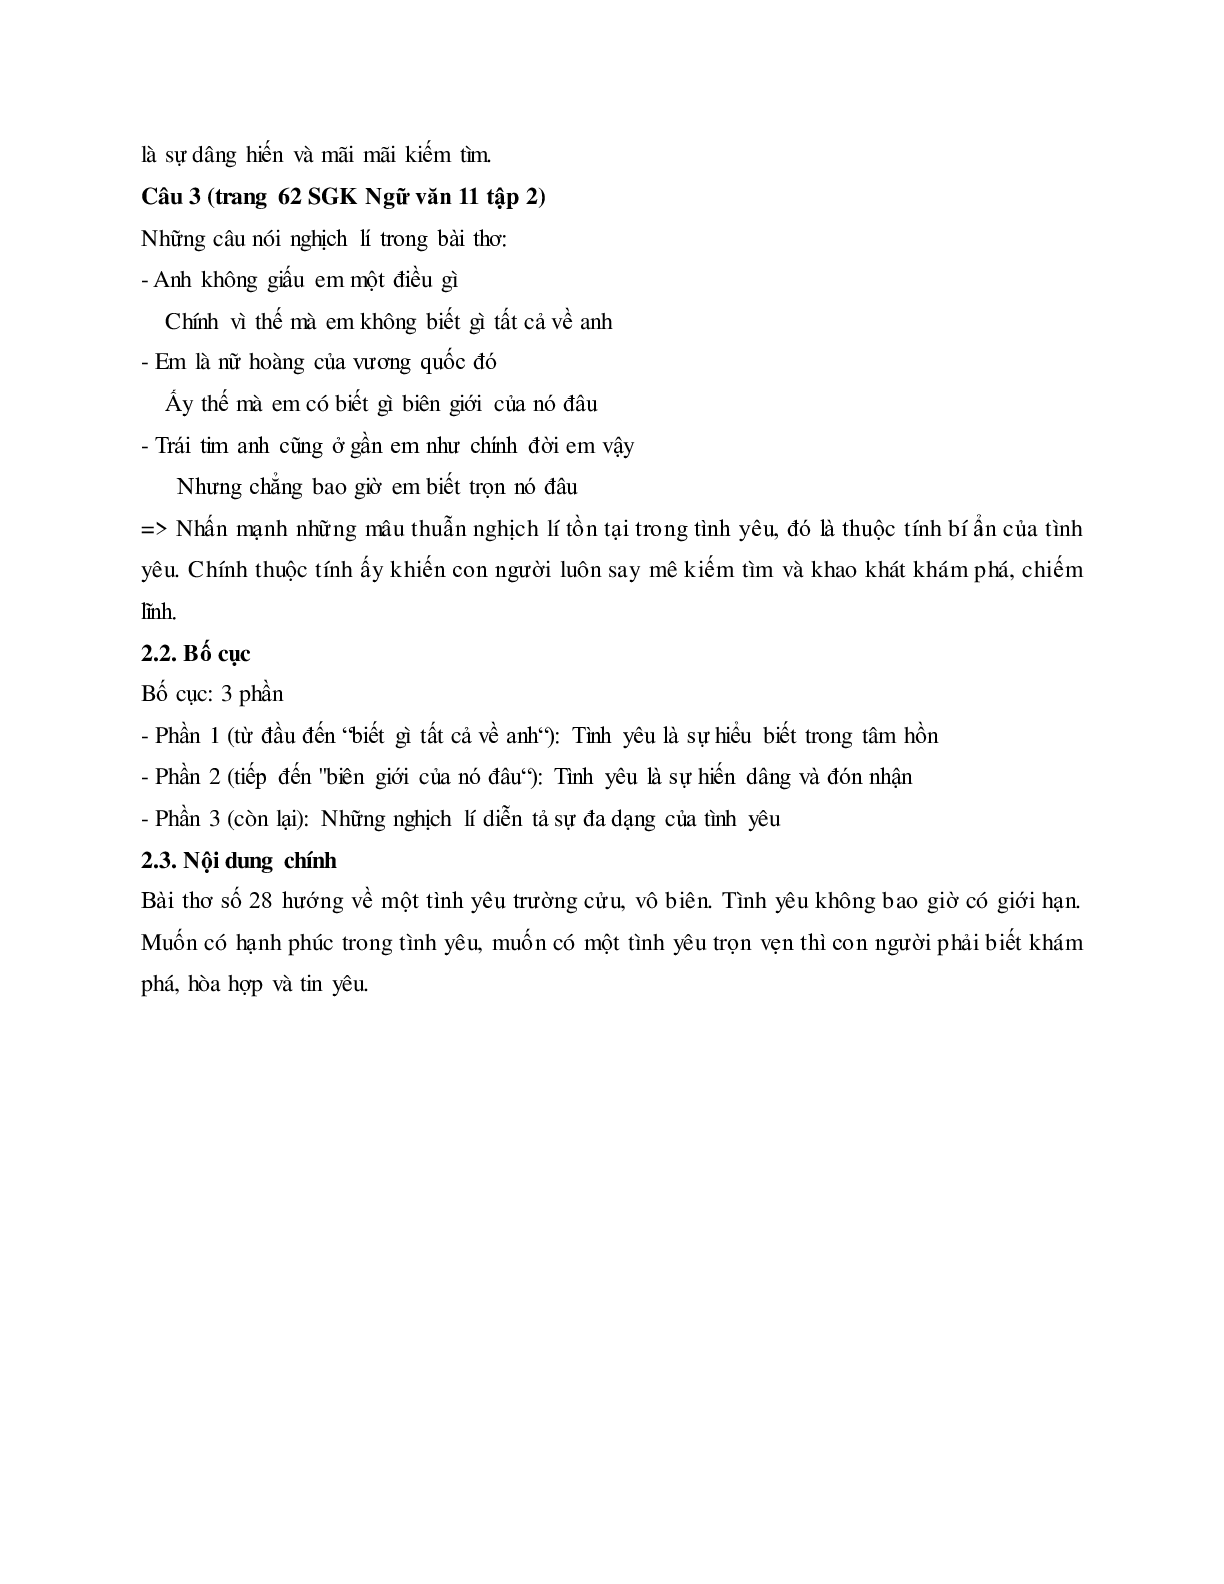 Soạn bài Bài thơ số 28 - ngắn nhất Soạn văn 11 (trang 6)